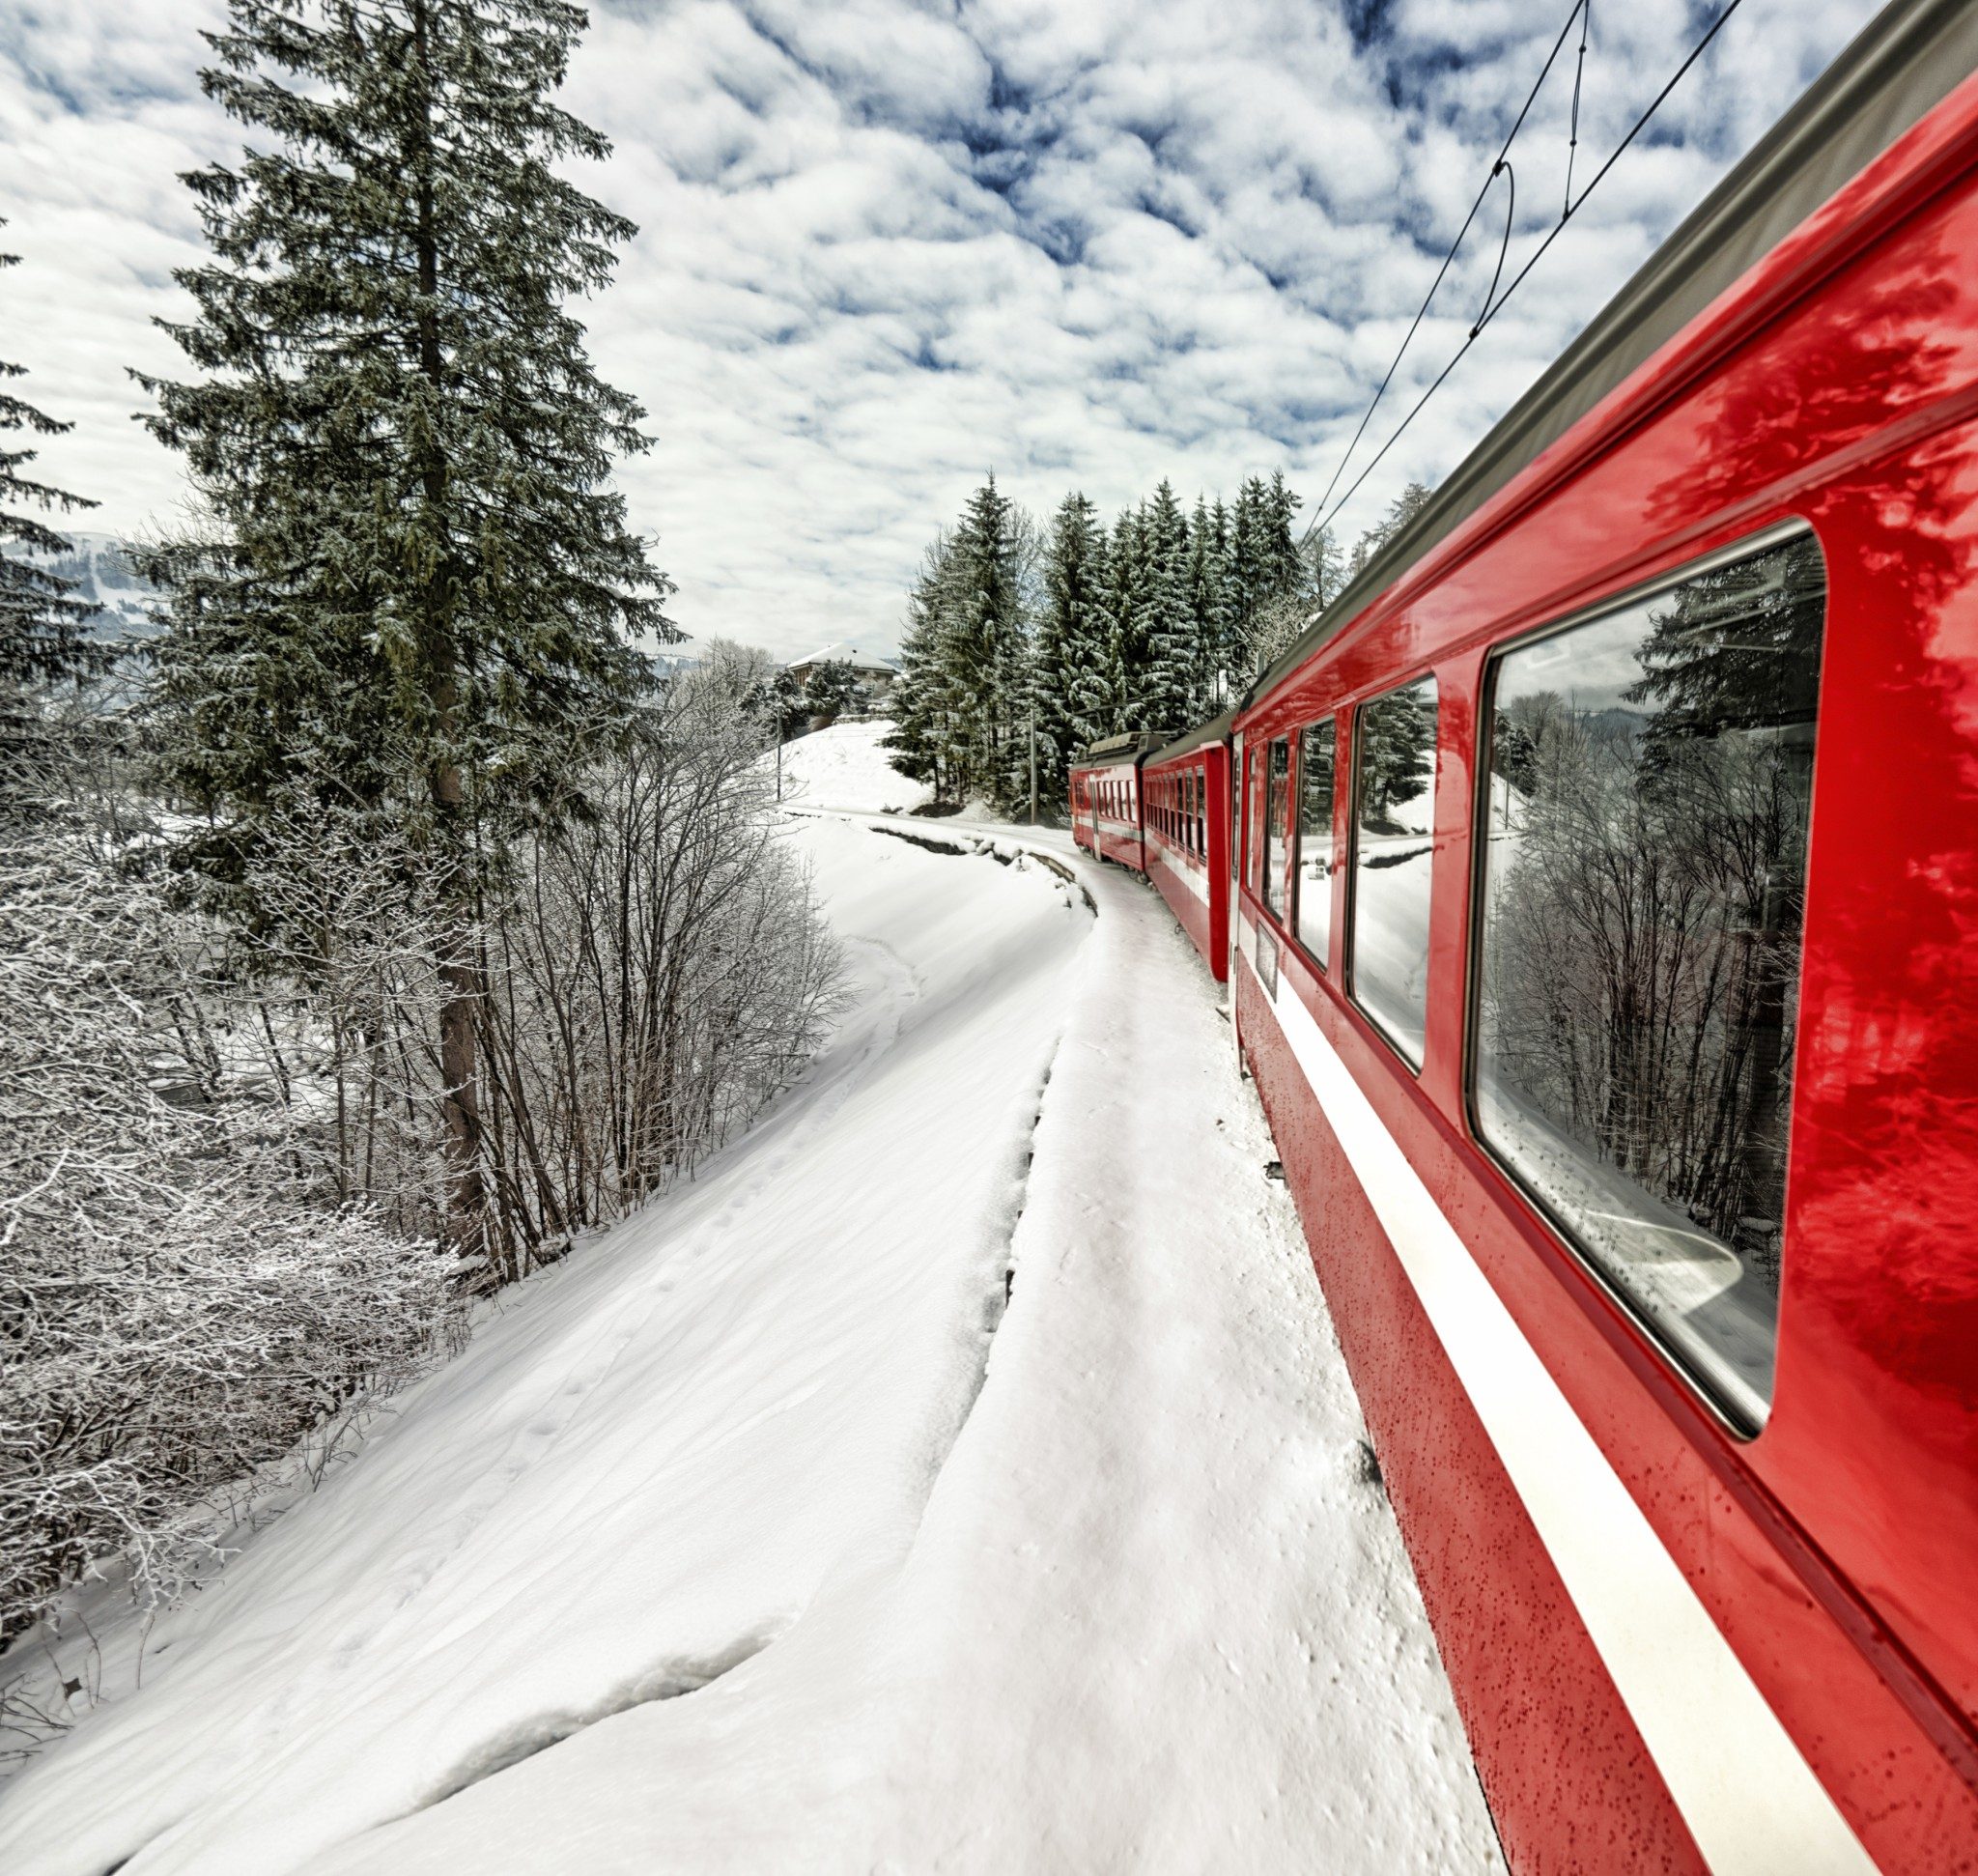 Ski Train Price Comparison Service Launched